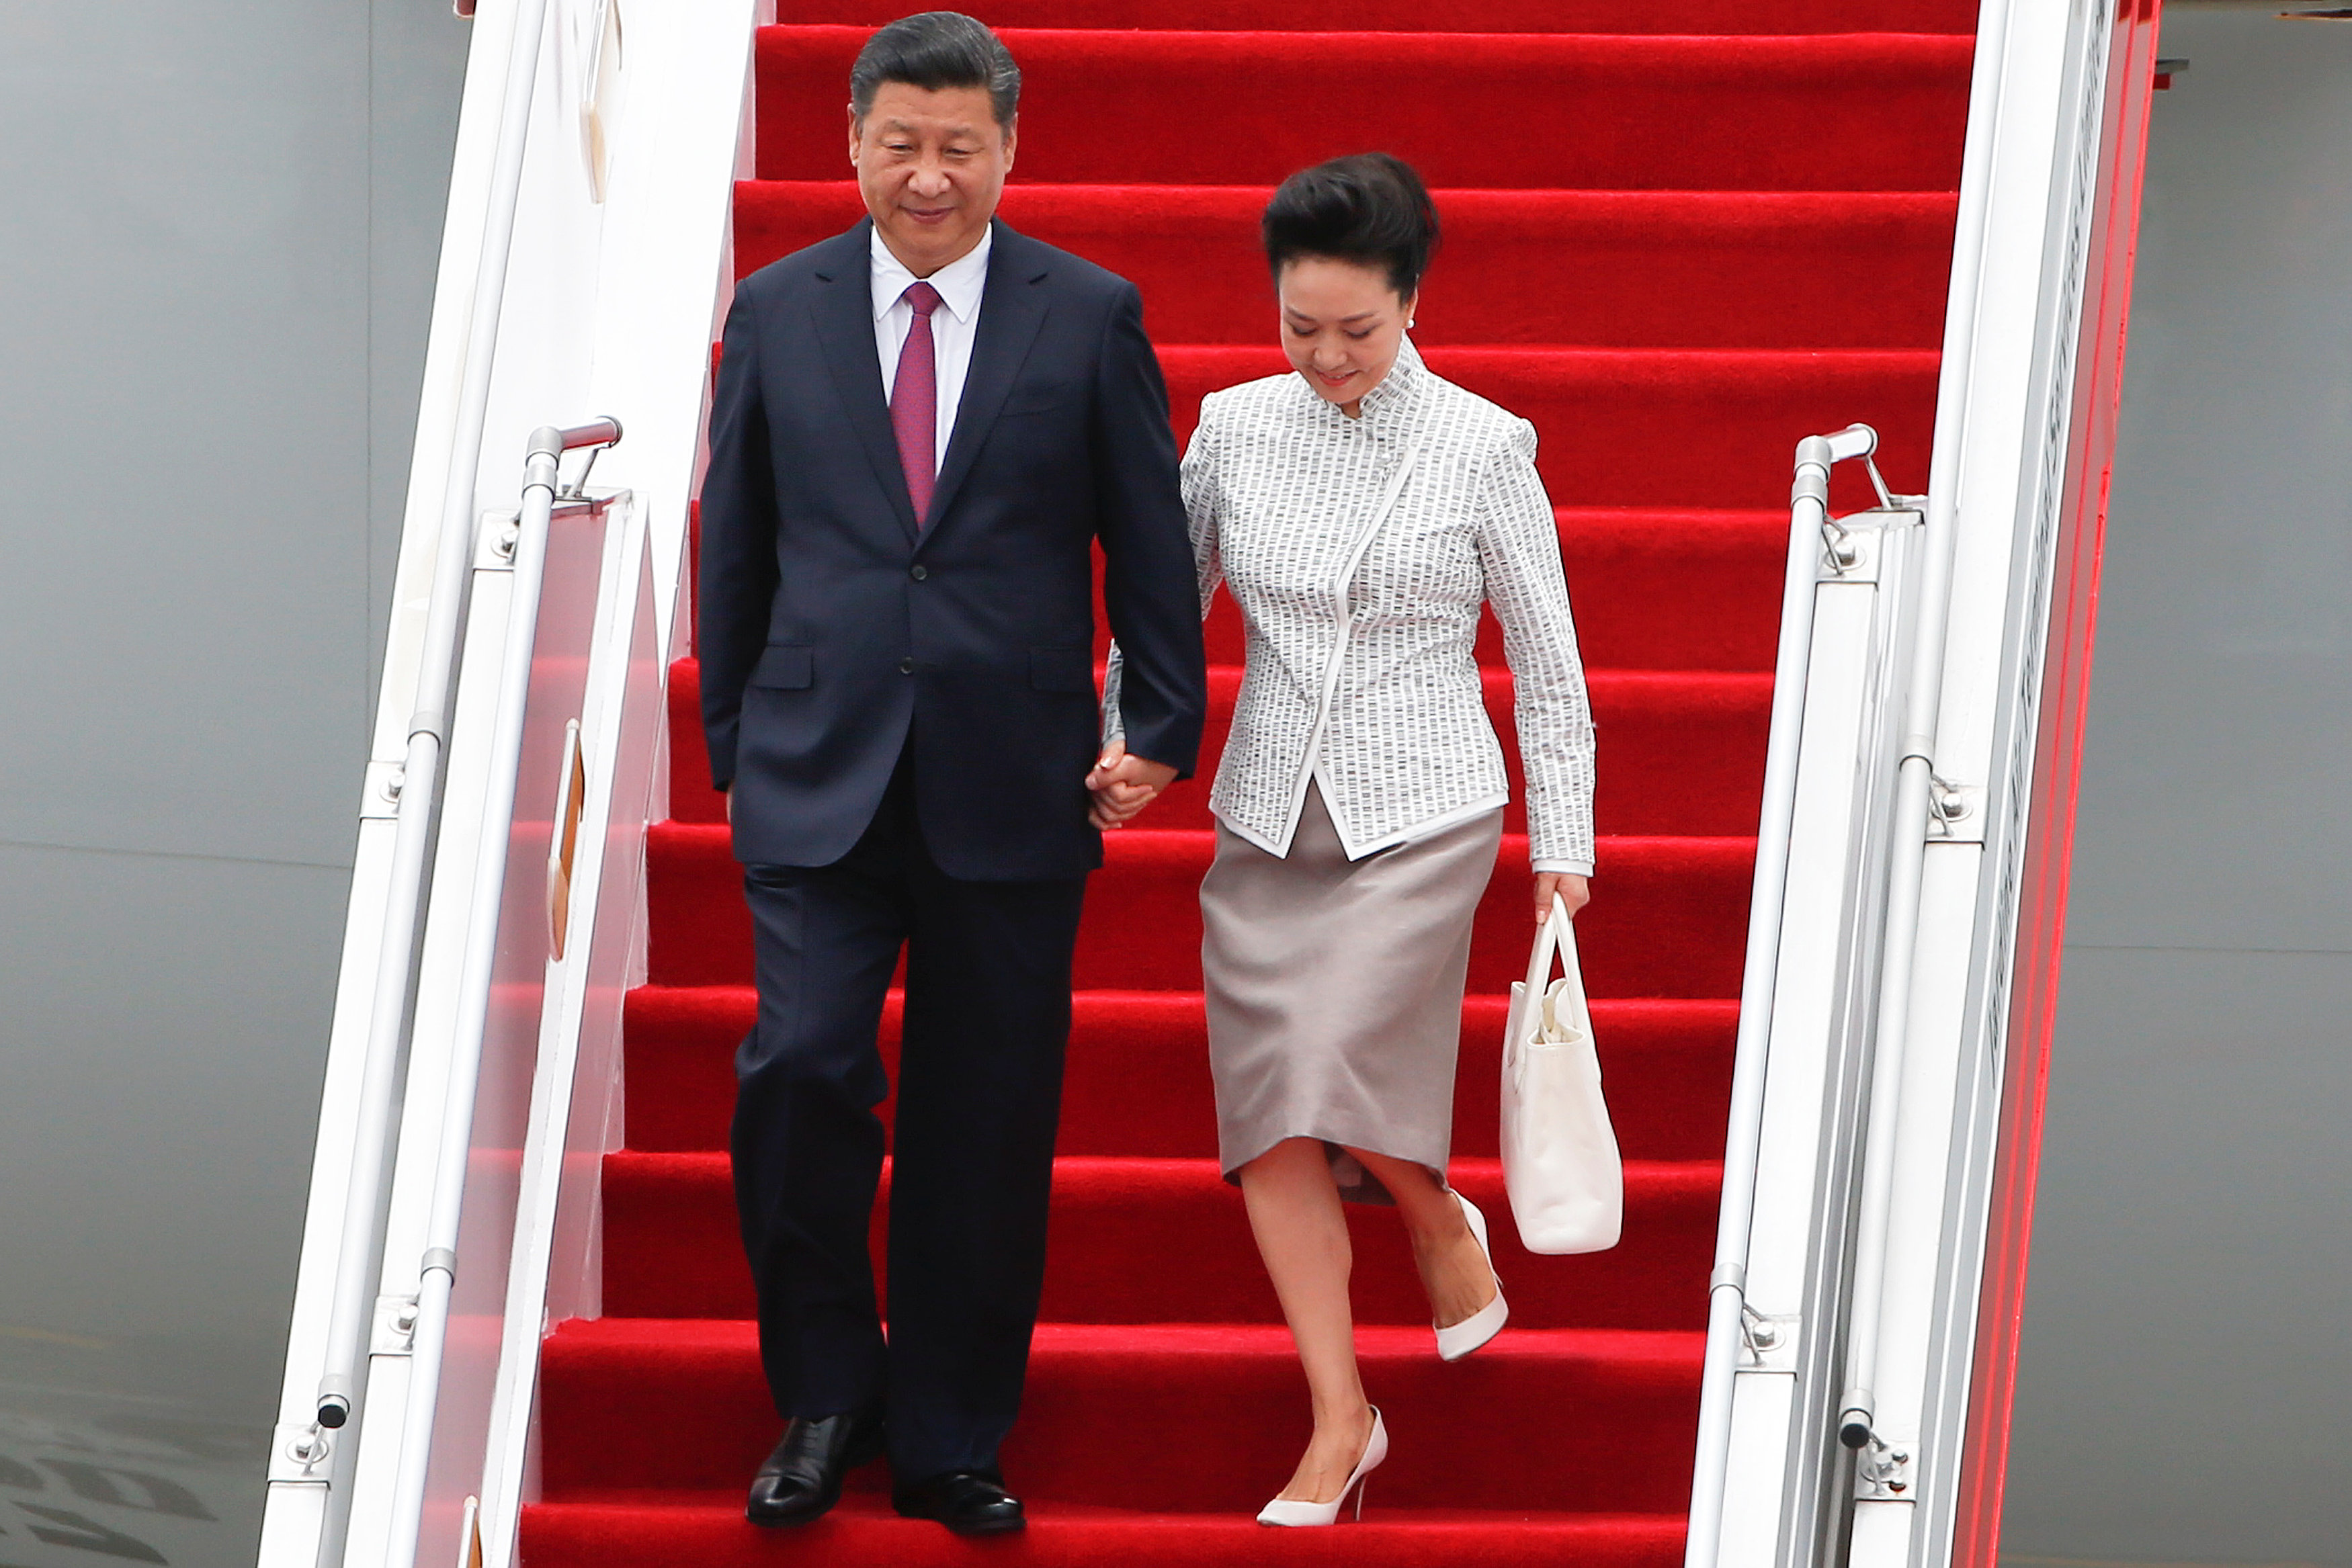 Εμβληματικής σημασίας επίσκεψη του Κινέζου προέδρου στο Χονγκ Κονγκ